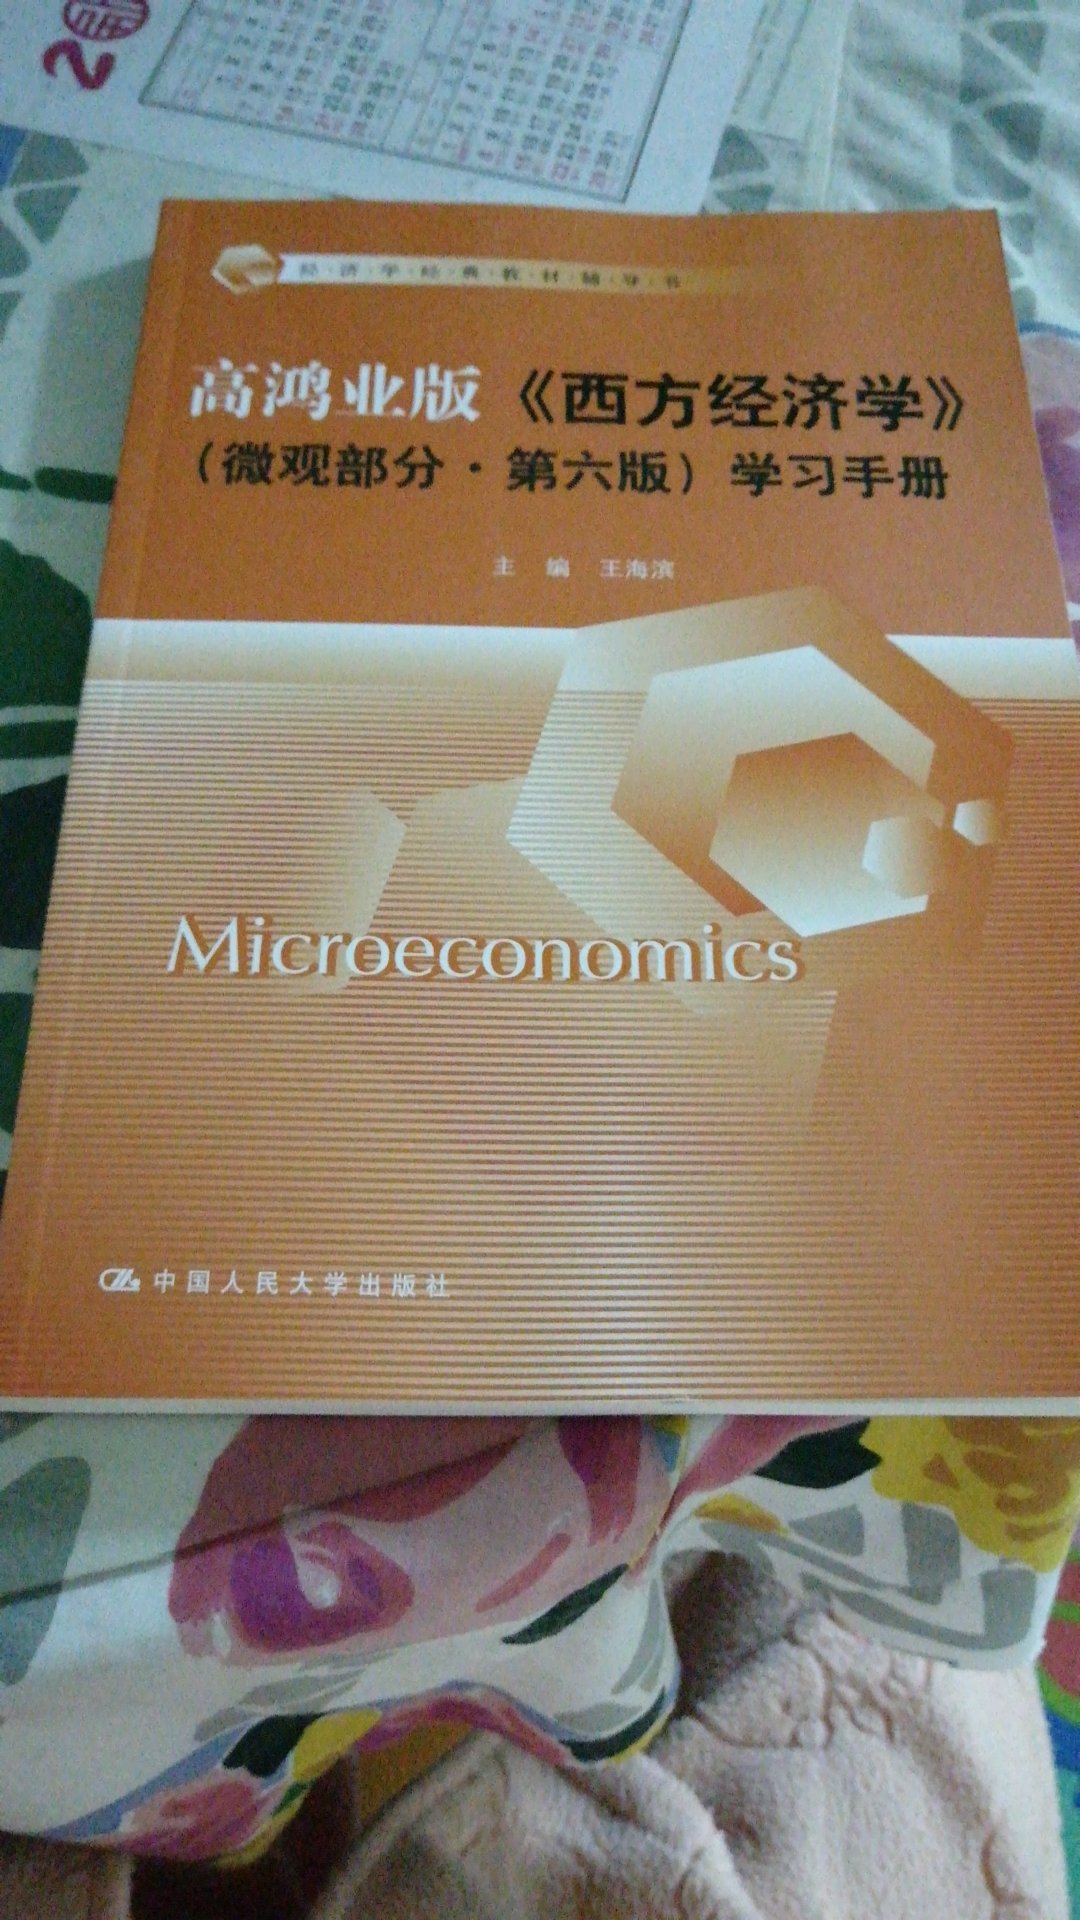 此书与西方经济学配套学习用，有不明白的地方，对照学习手册一看就明白了，希望5月申硕考试顺利通过